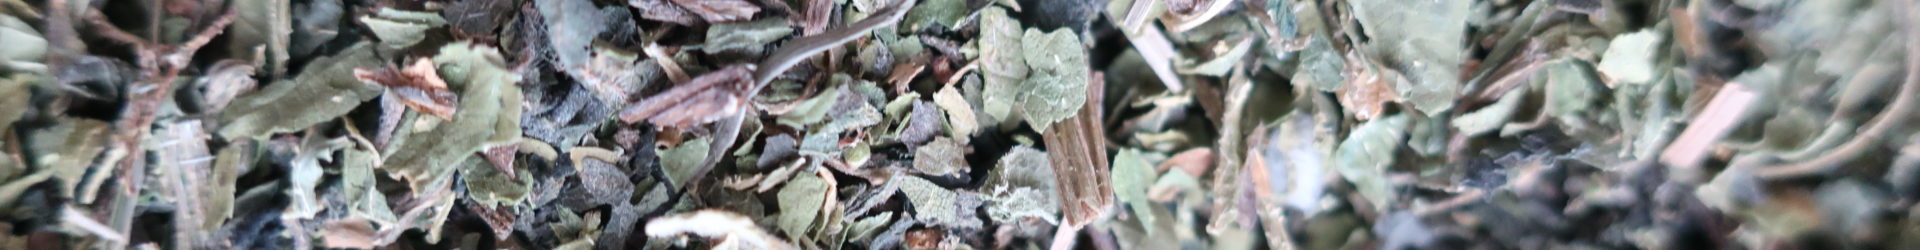 Ortie piquante (Urtica dioica L.) 50g